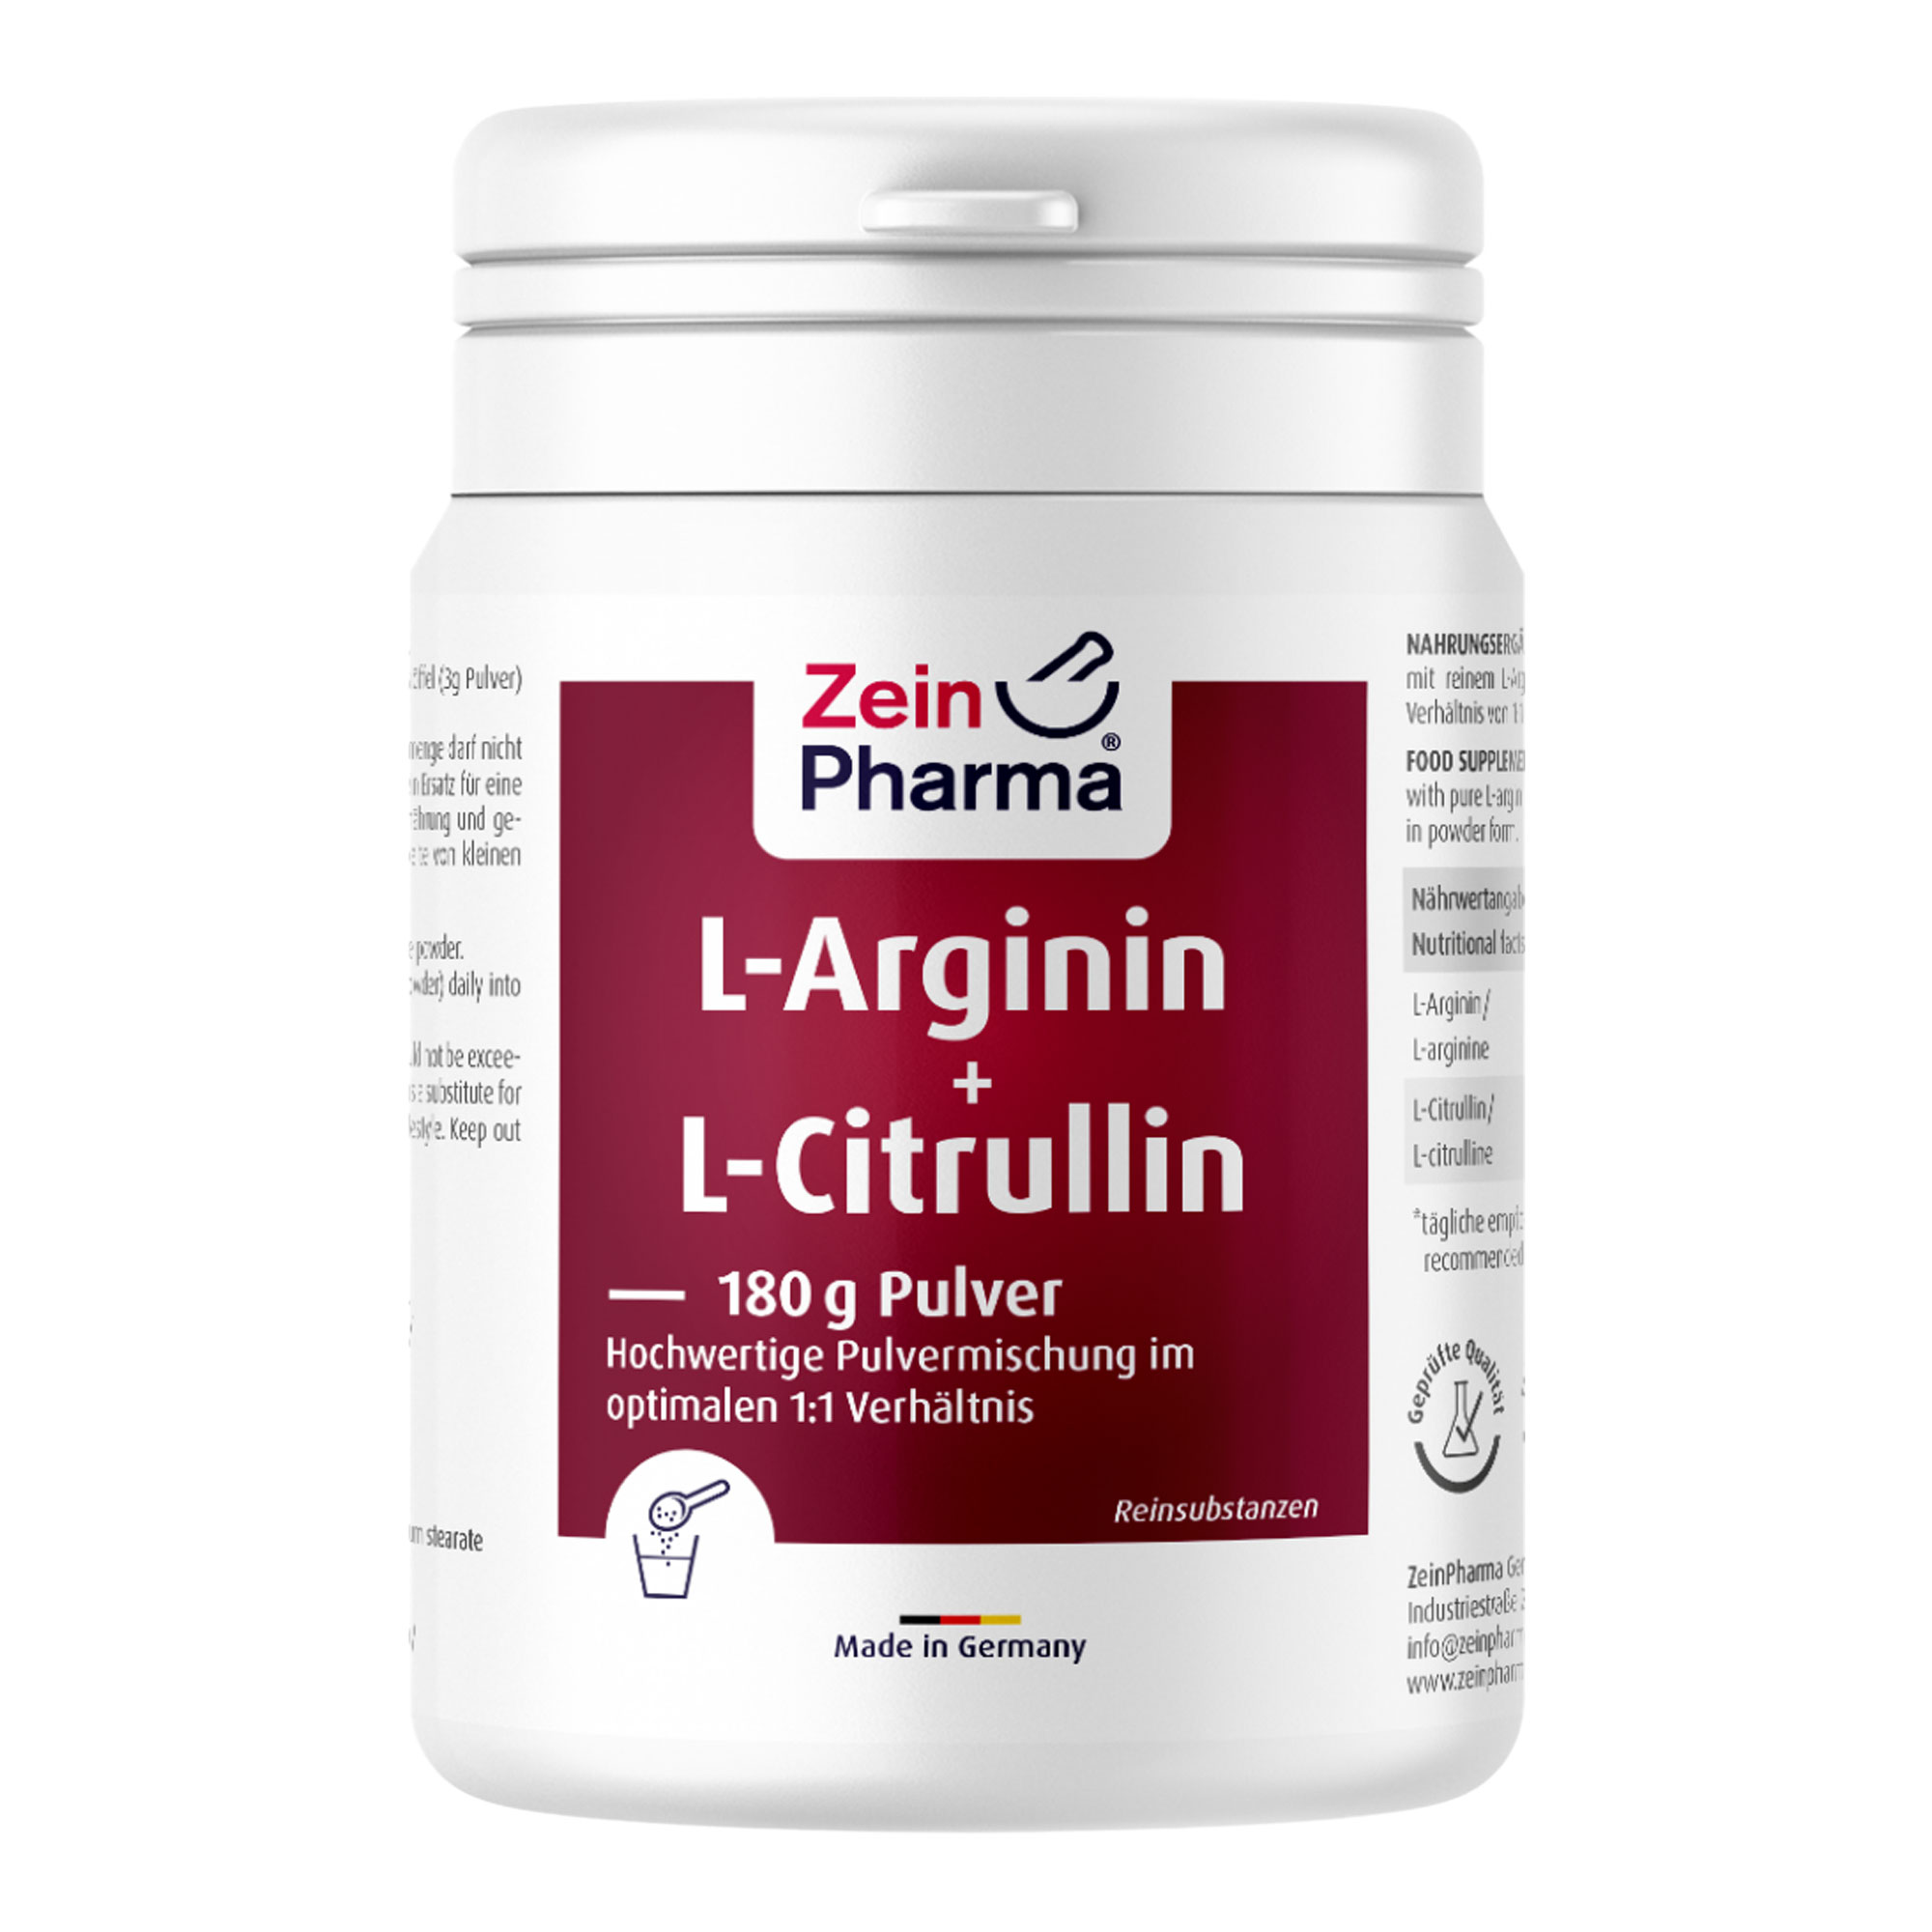 Nahrungsergänzungsmittel mit reinem L-Arginin und L-Citrullin in einem Verhältnis von 1:1 in Pulverform.